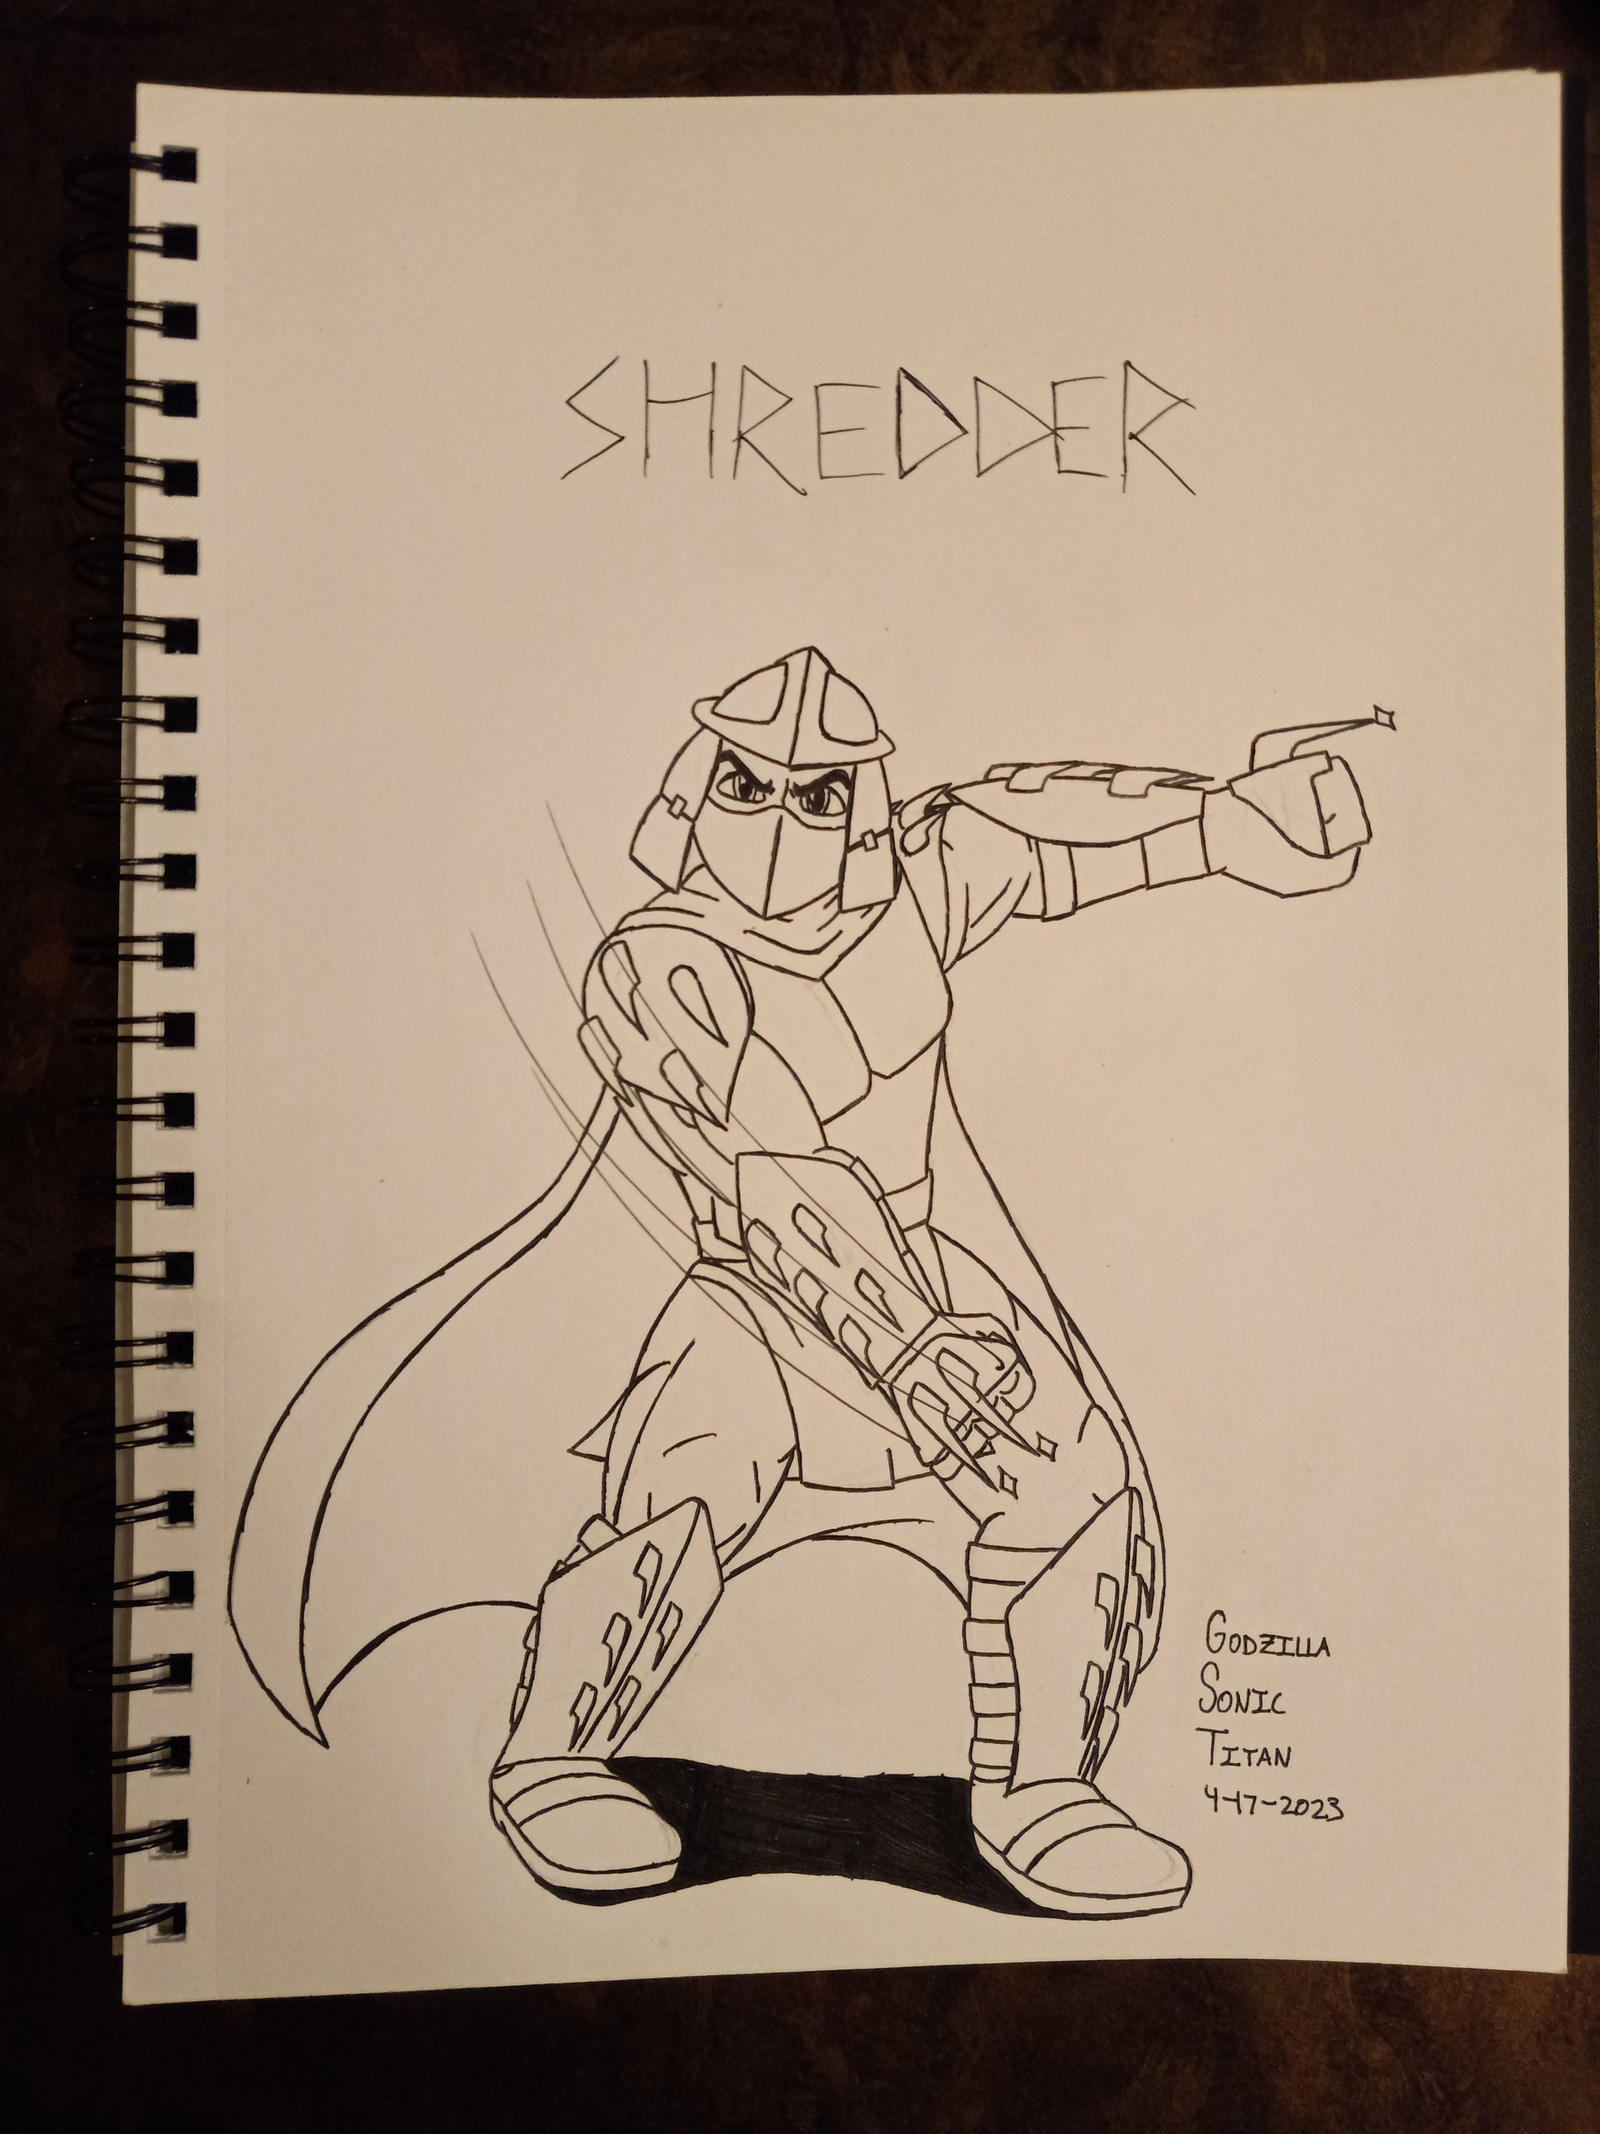 TMNT: 1987's Shredder by Robotfangirl67 on DeviantArt